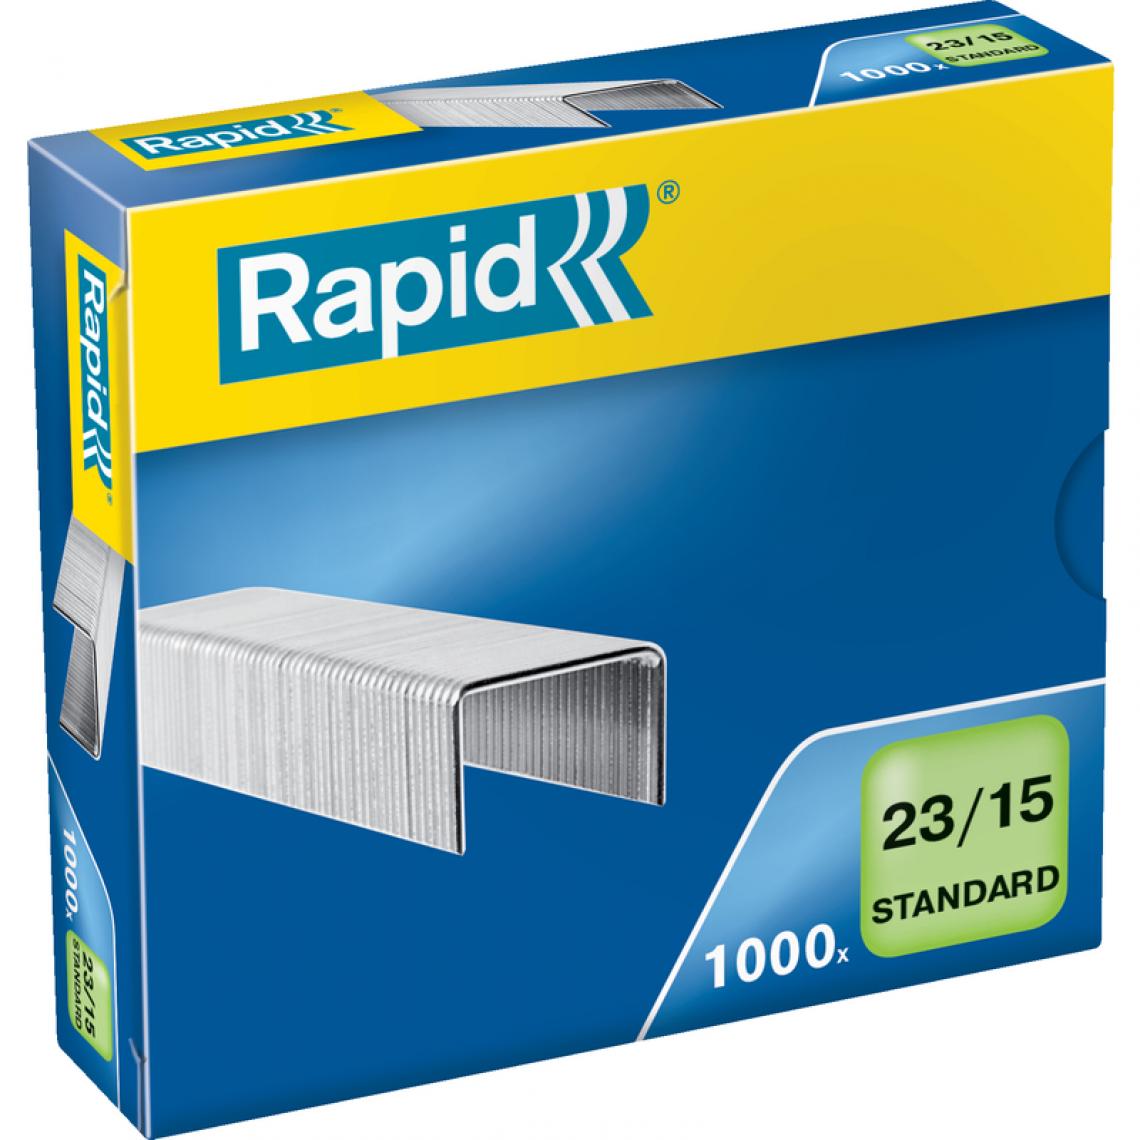 Rapid - Rapid Agrafes Standard 23/15, galvanisé () - Boulonnerie